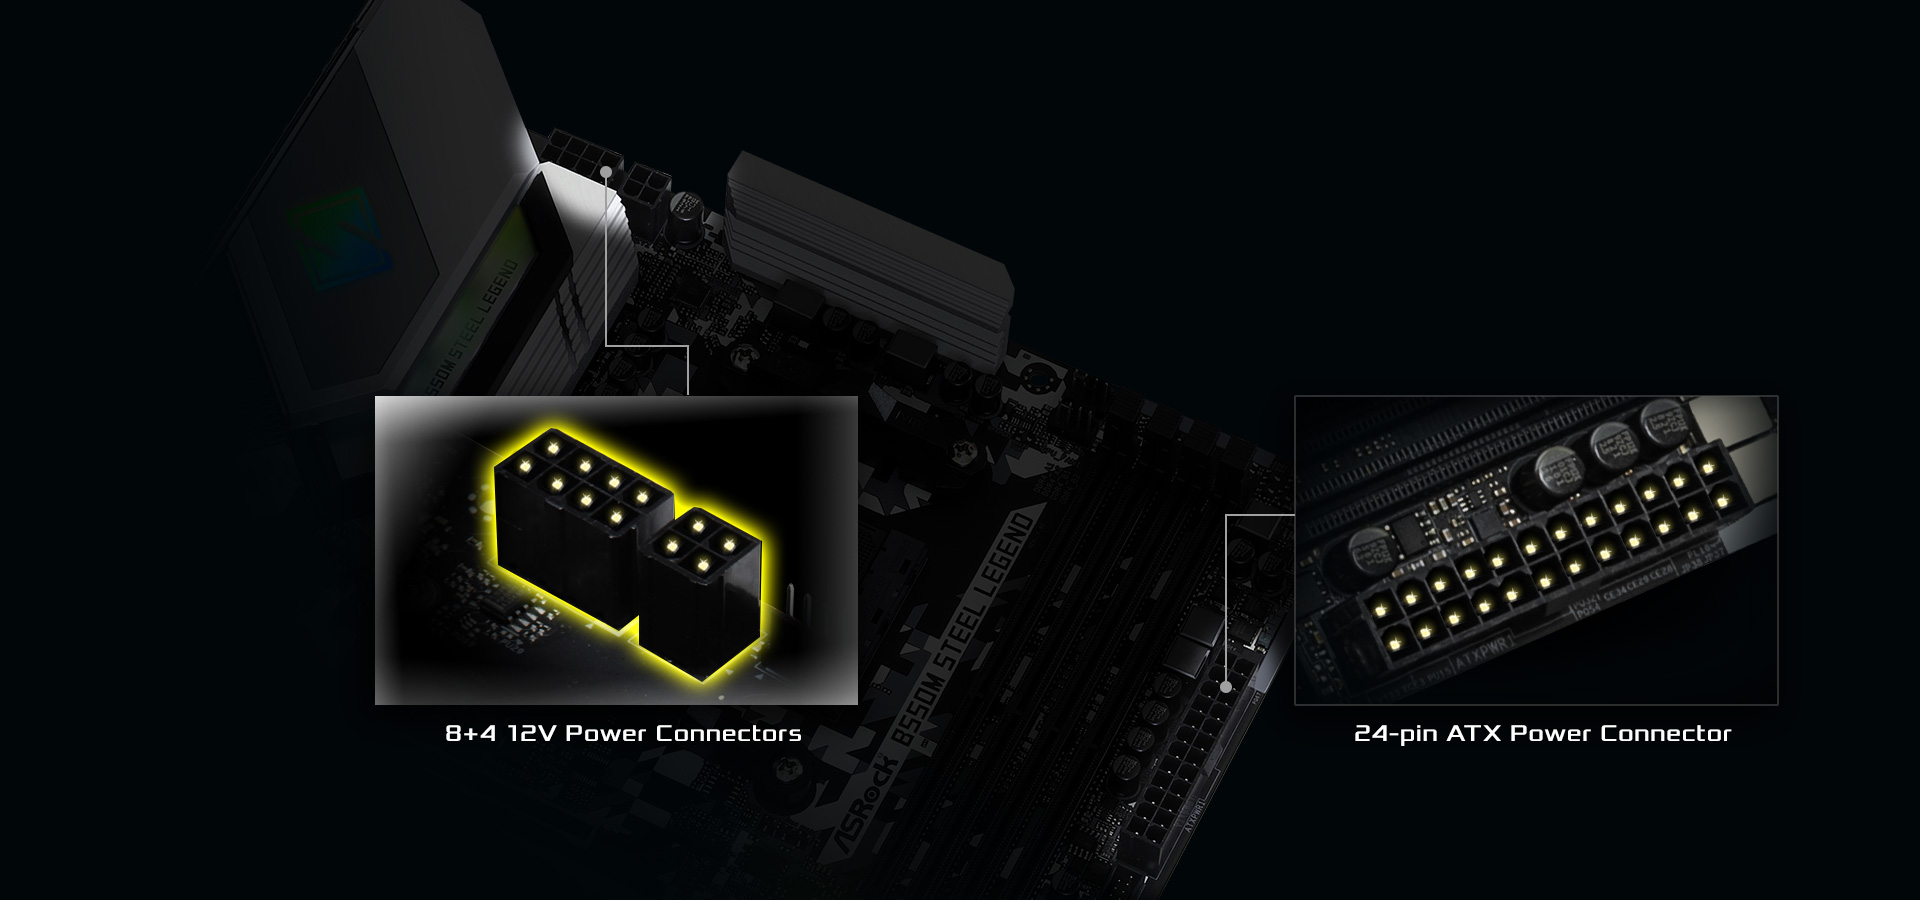 HiDensityPowerConnector-B550 of the motherboard